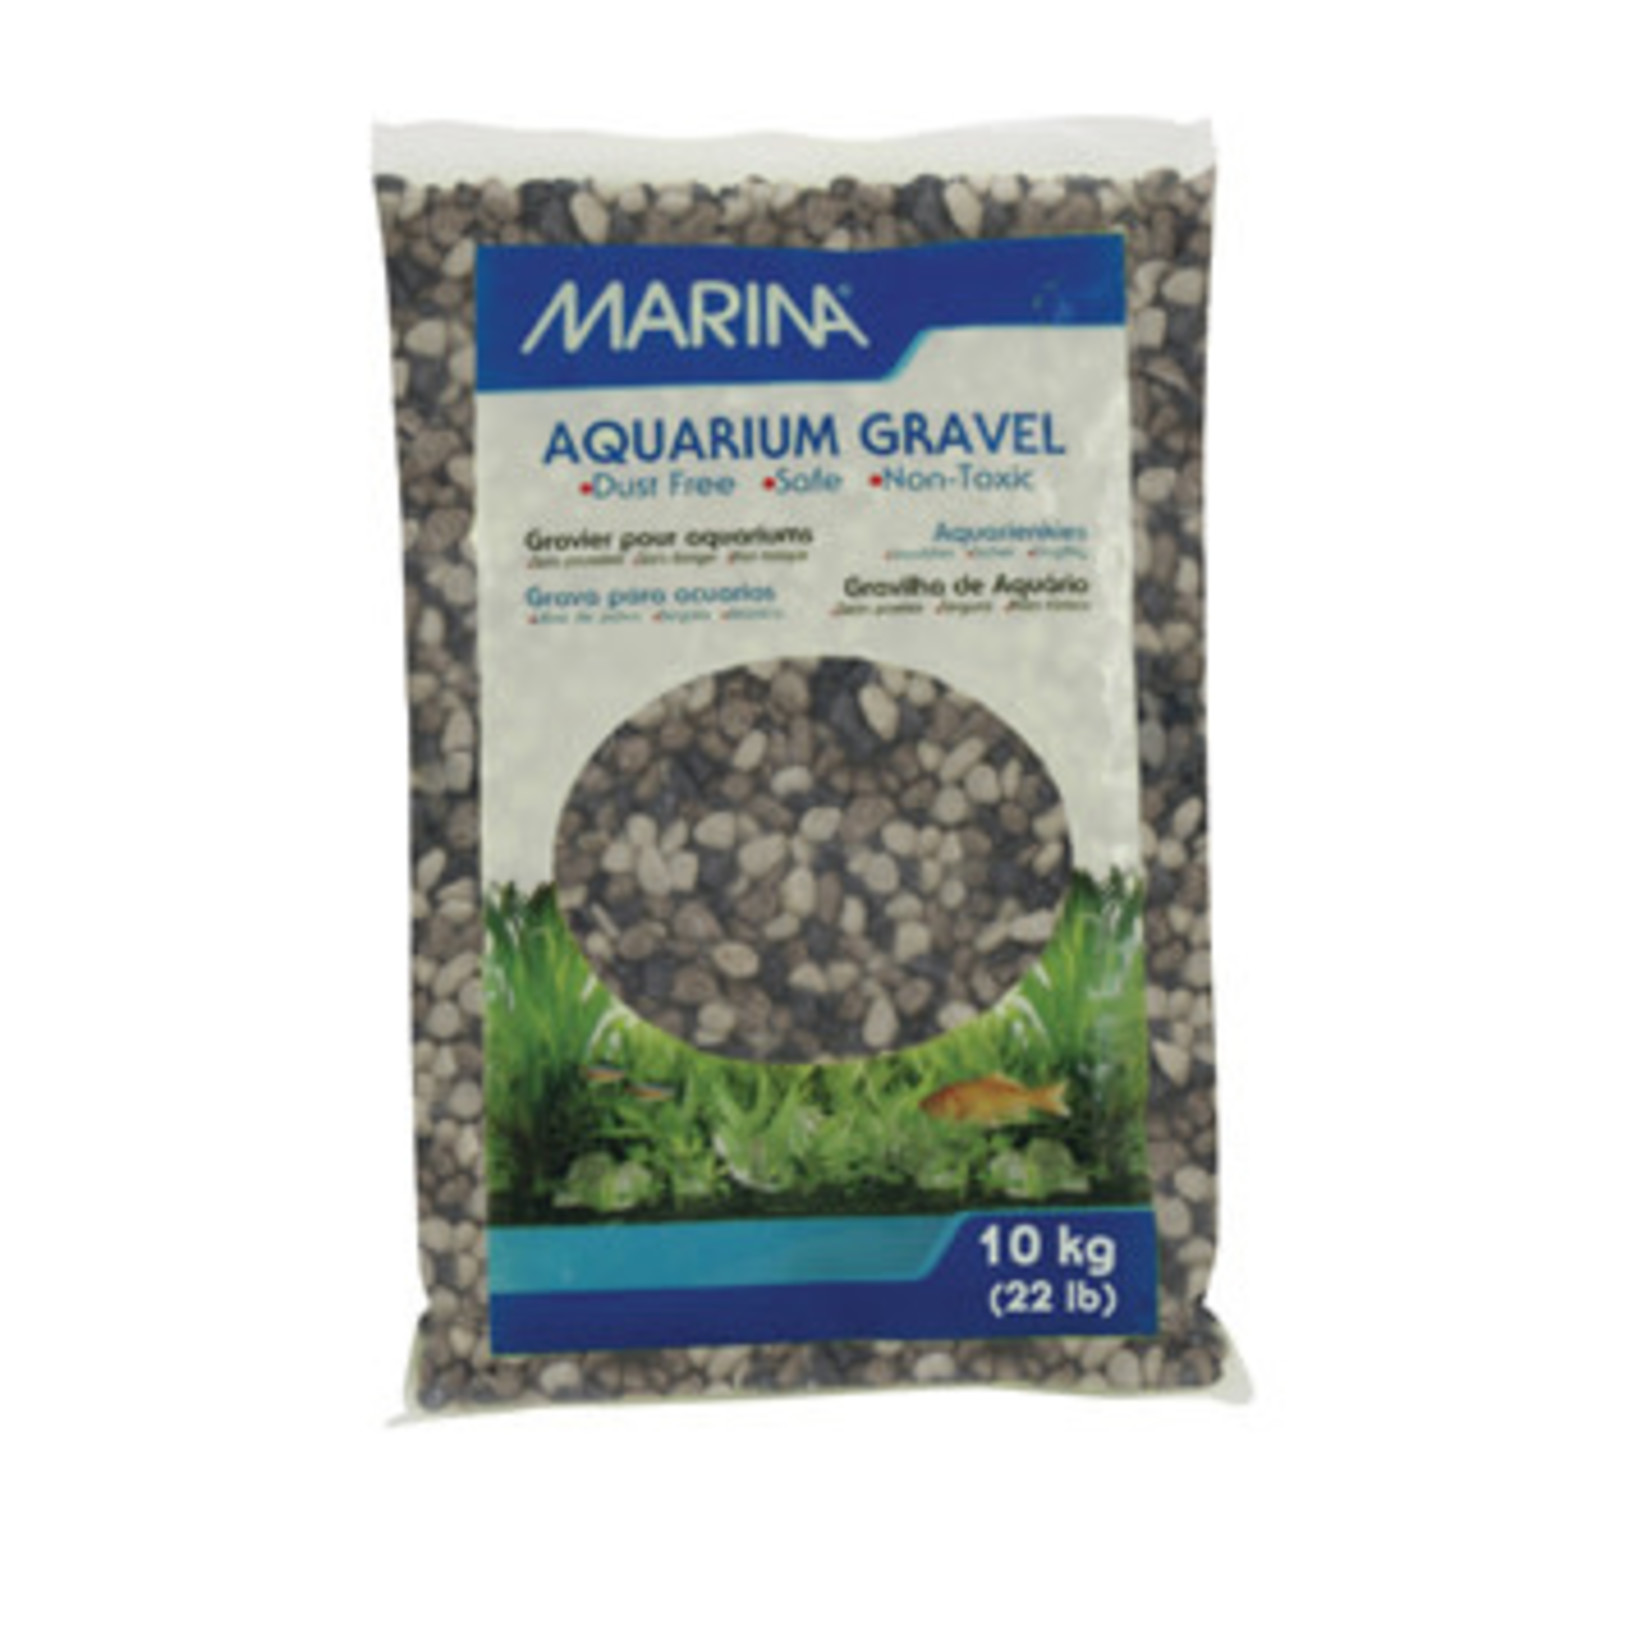 MARINA Marina Decorative Aquarium Gravel - Grey Tones - 10 kg